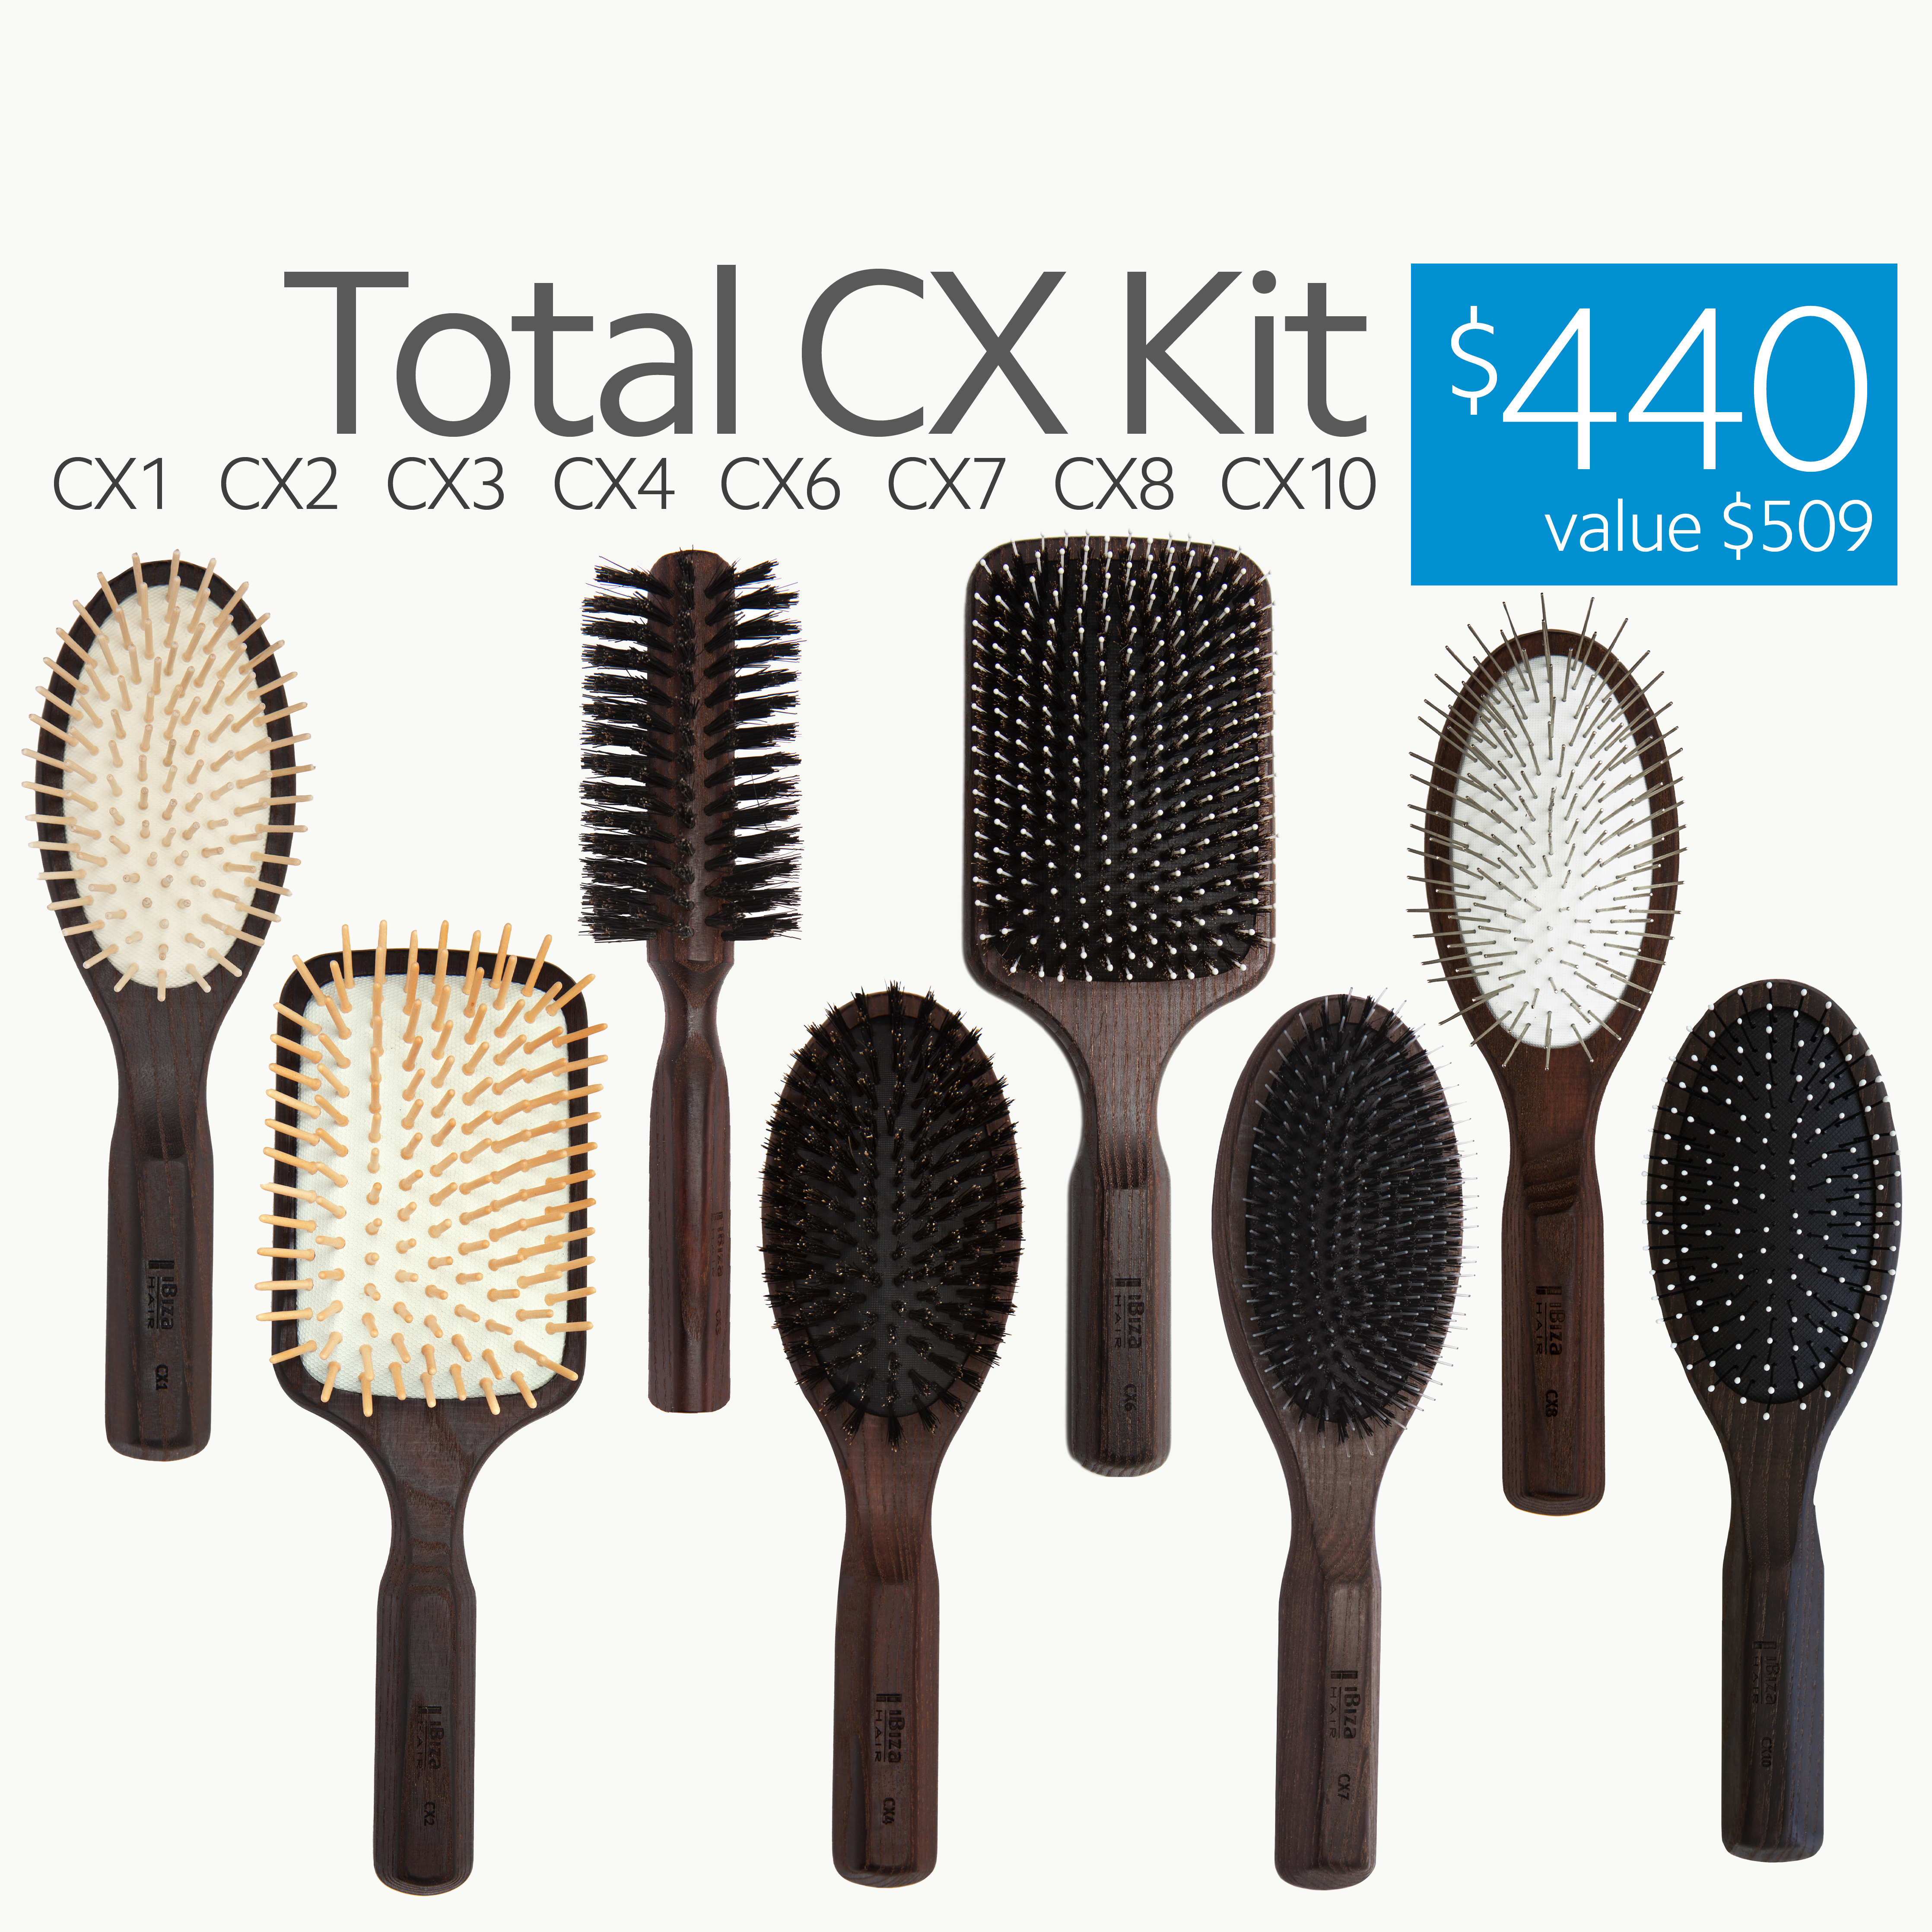 Total CX Kit